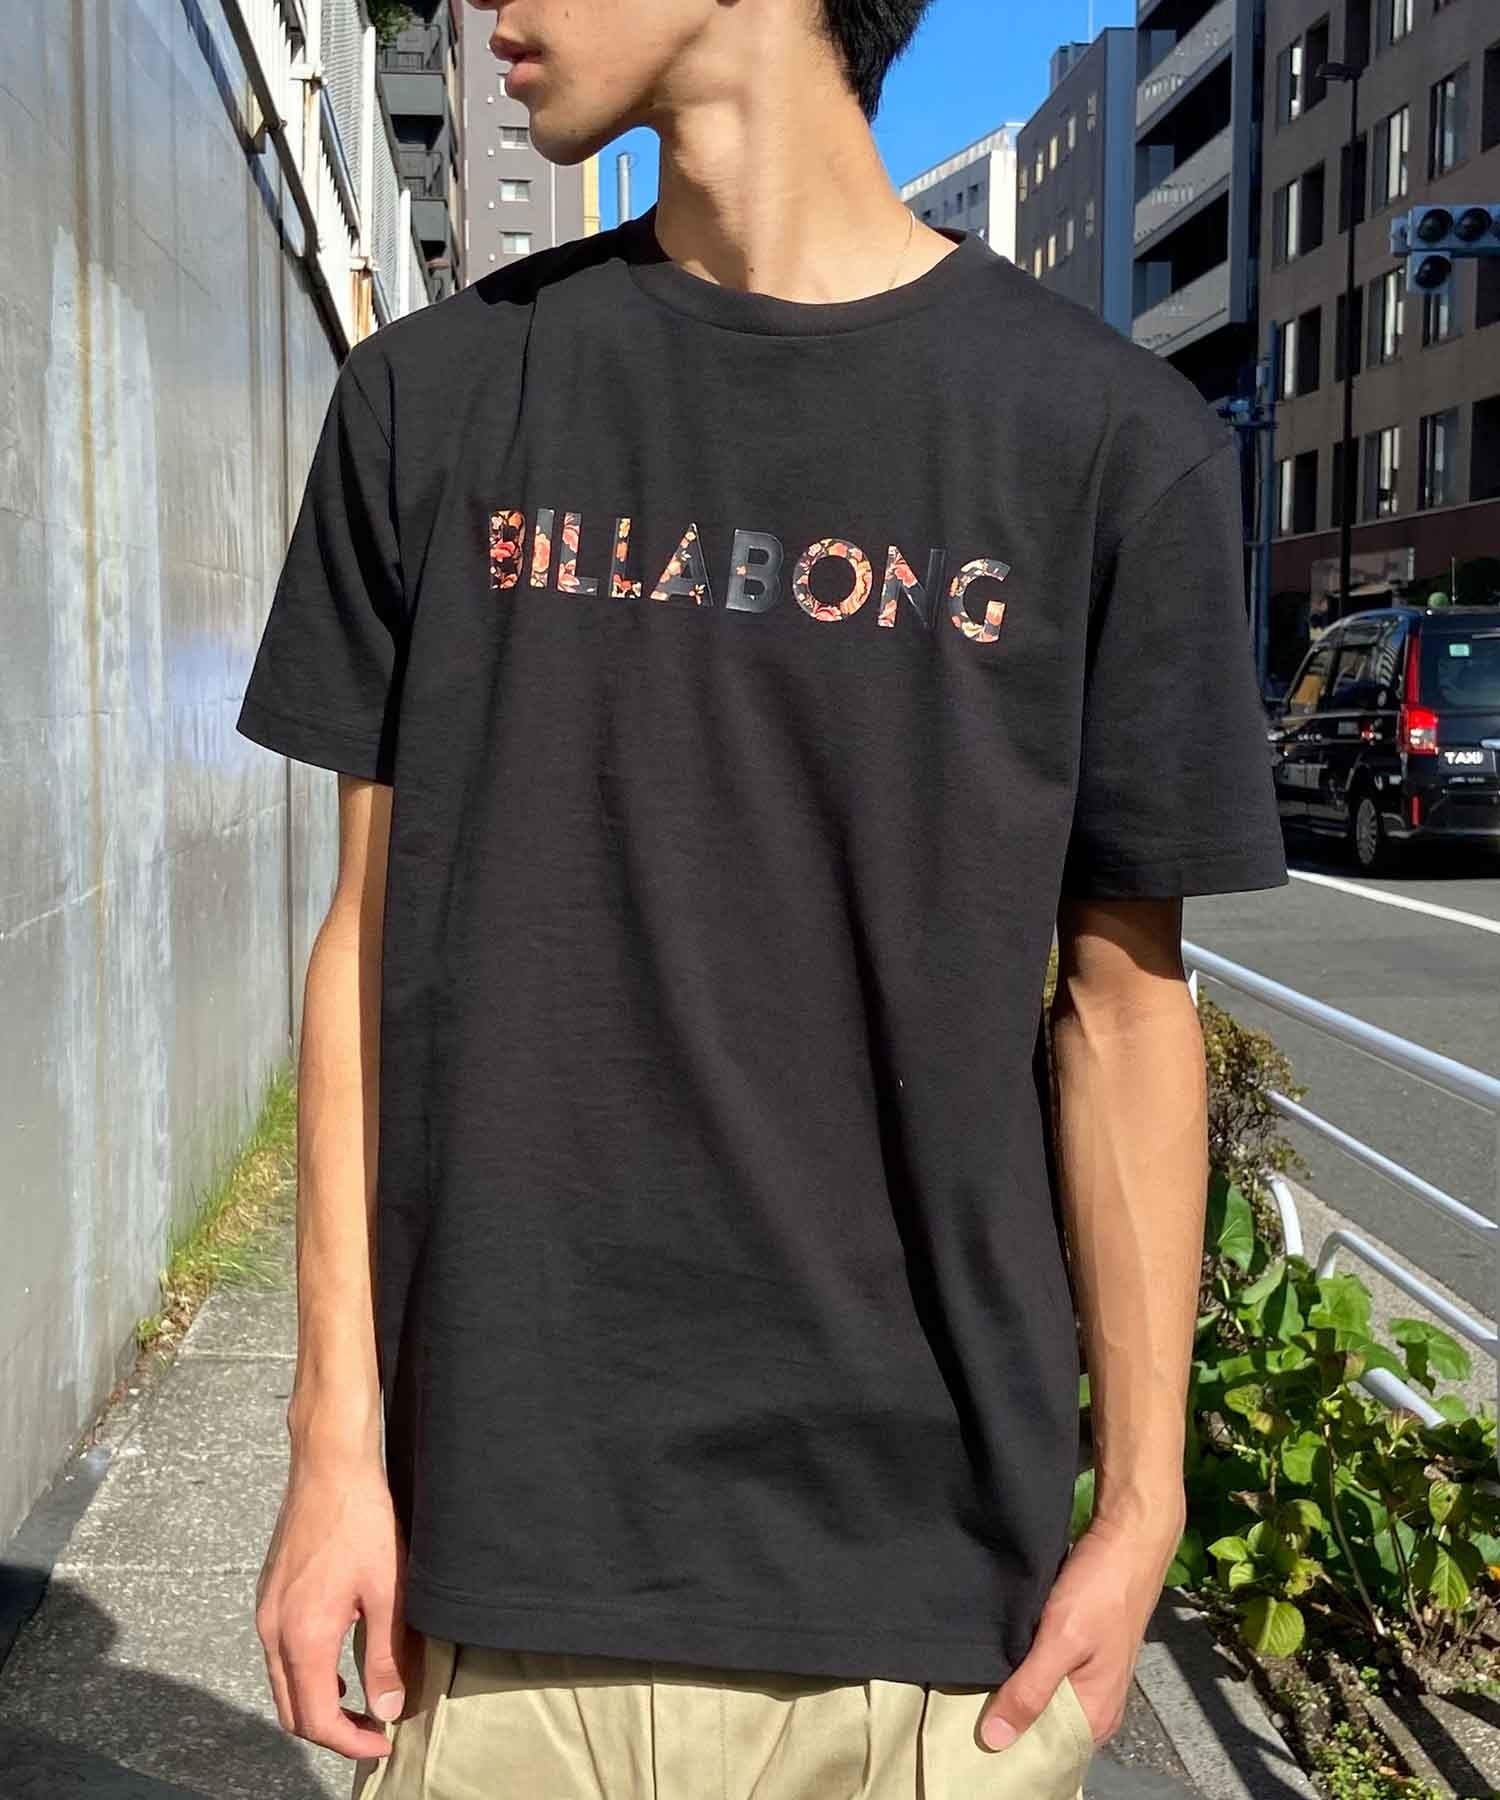 【クーポン対象】BILLABONG ビラボン UNITY LOGO Tシャツ 半袖 メンズ ロゴ BE011-200(BK2-S)